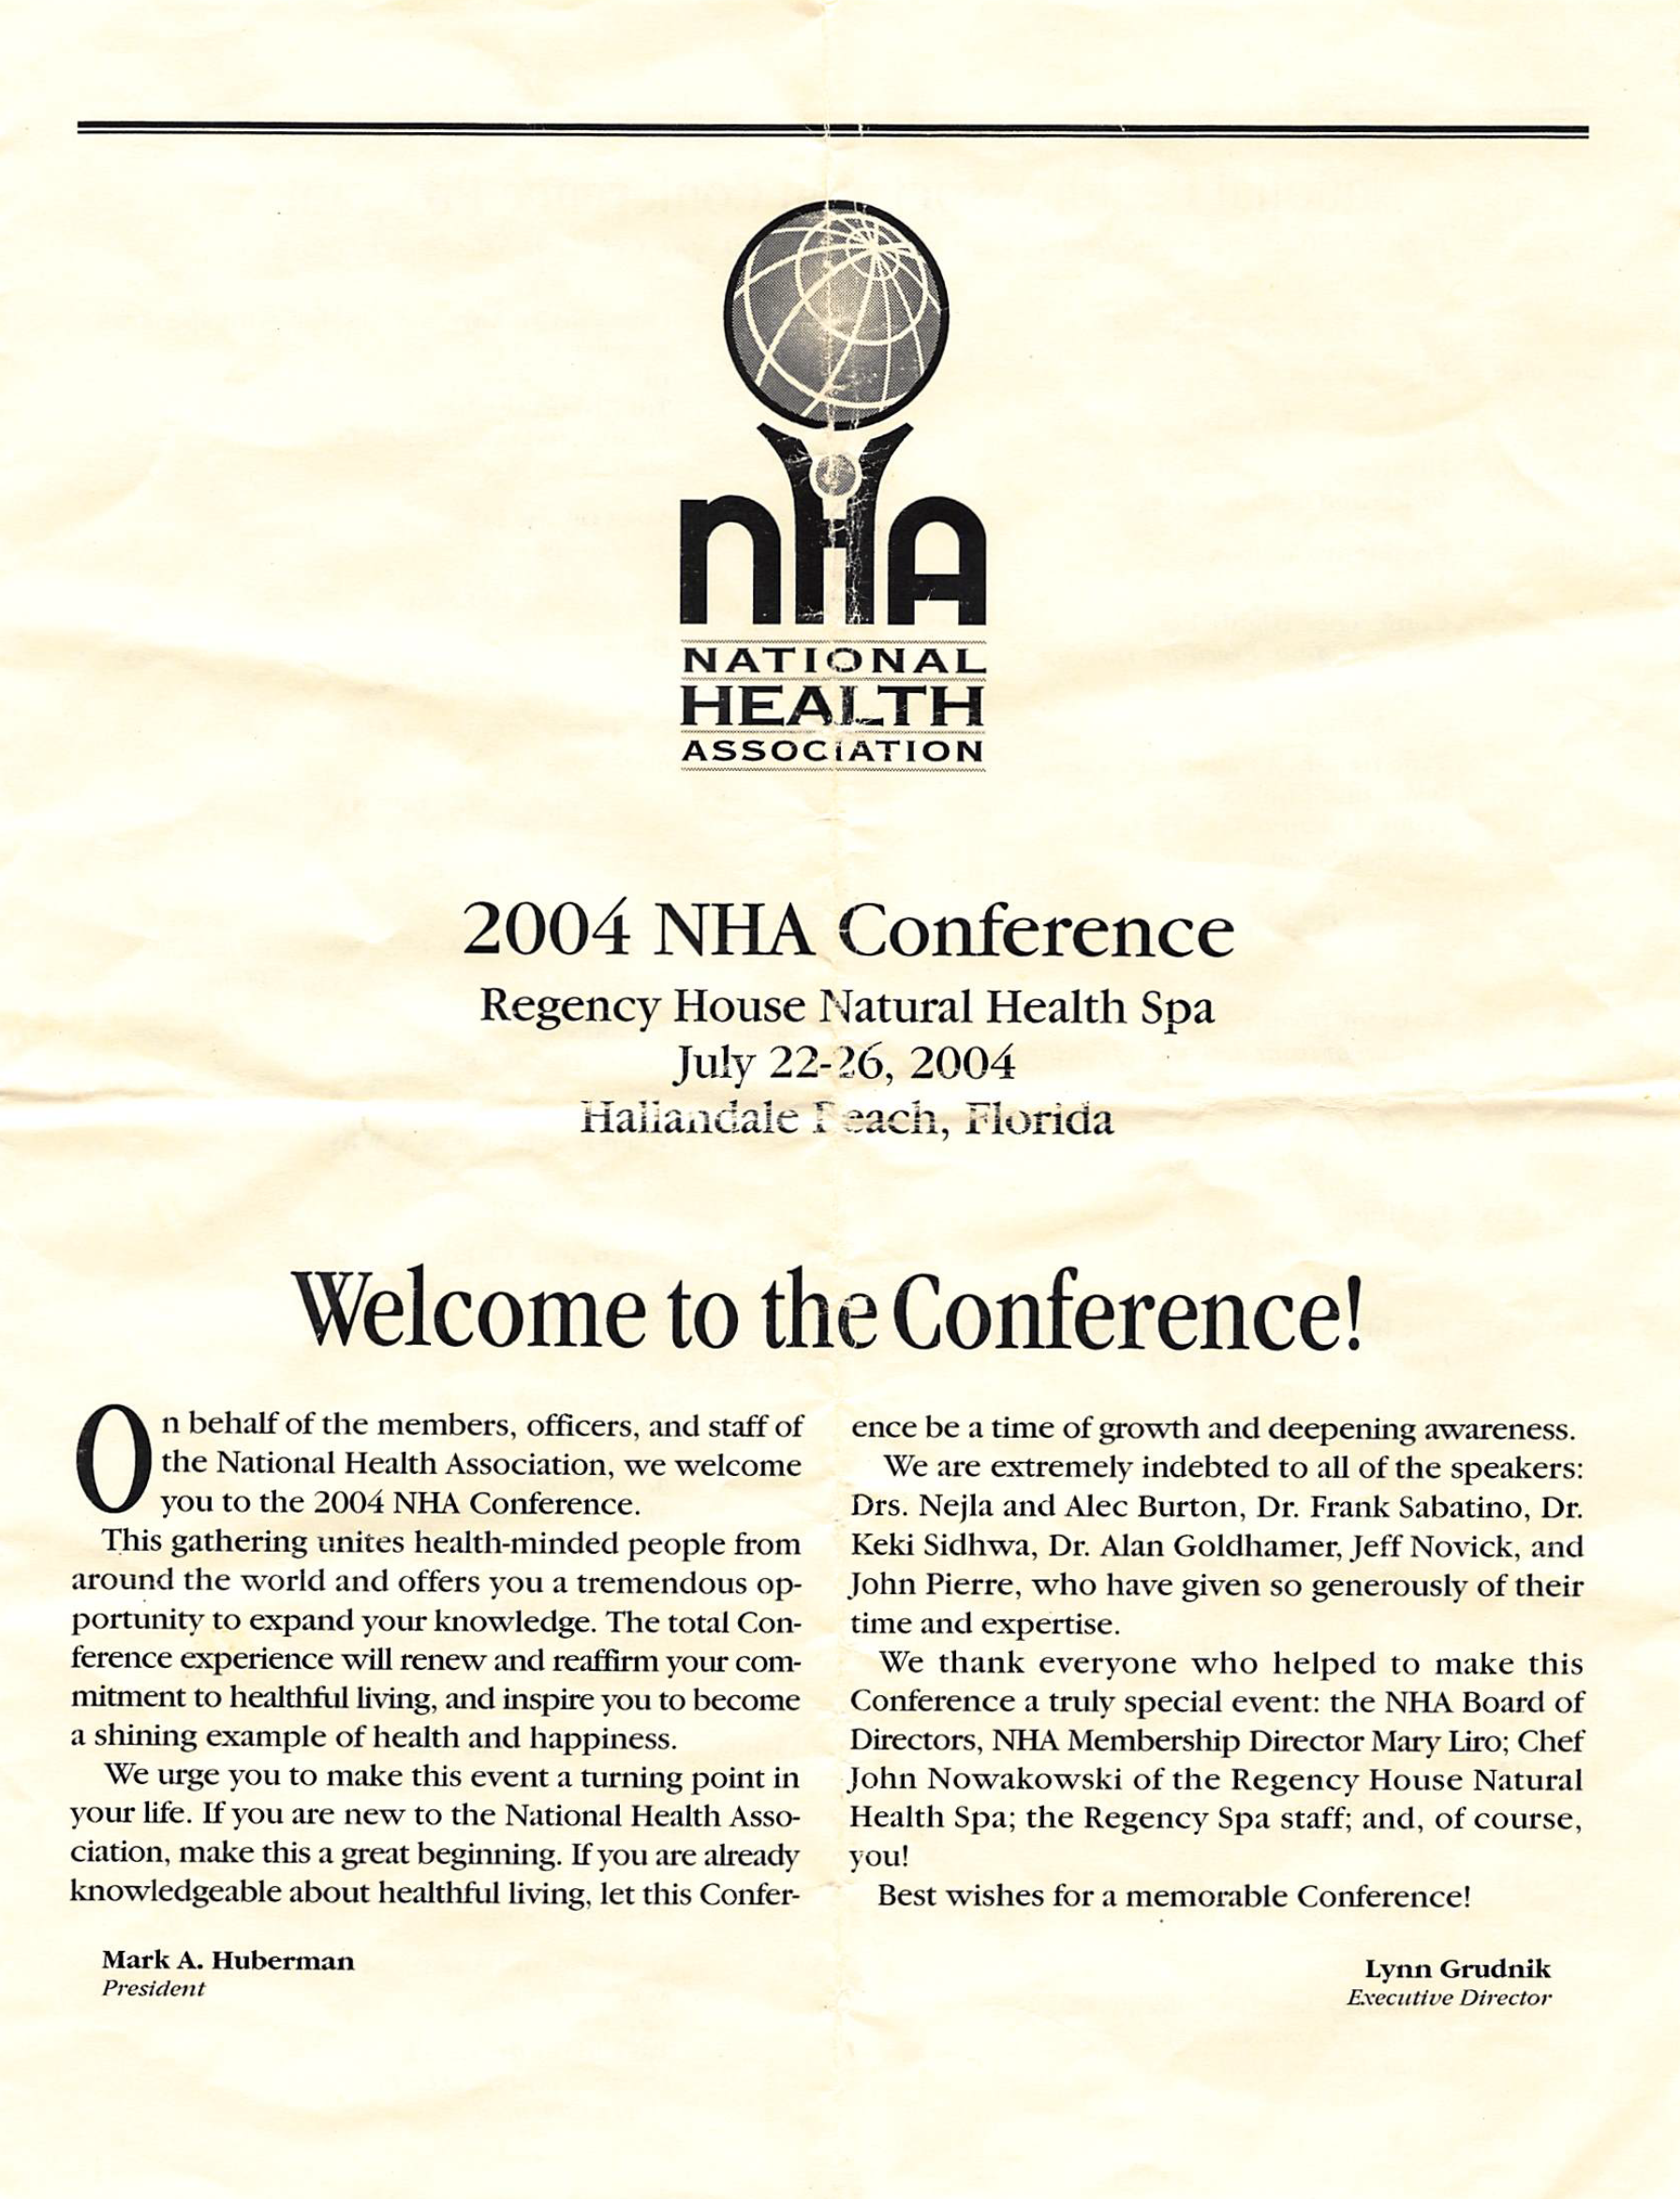 Conference Program. Hallandale, 2004